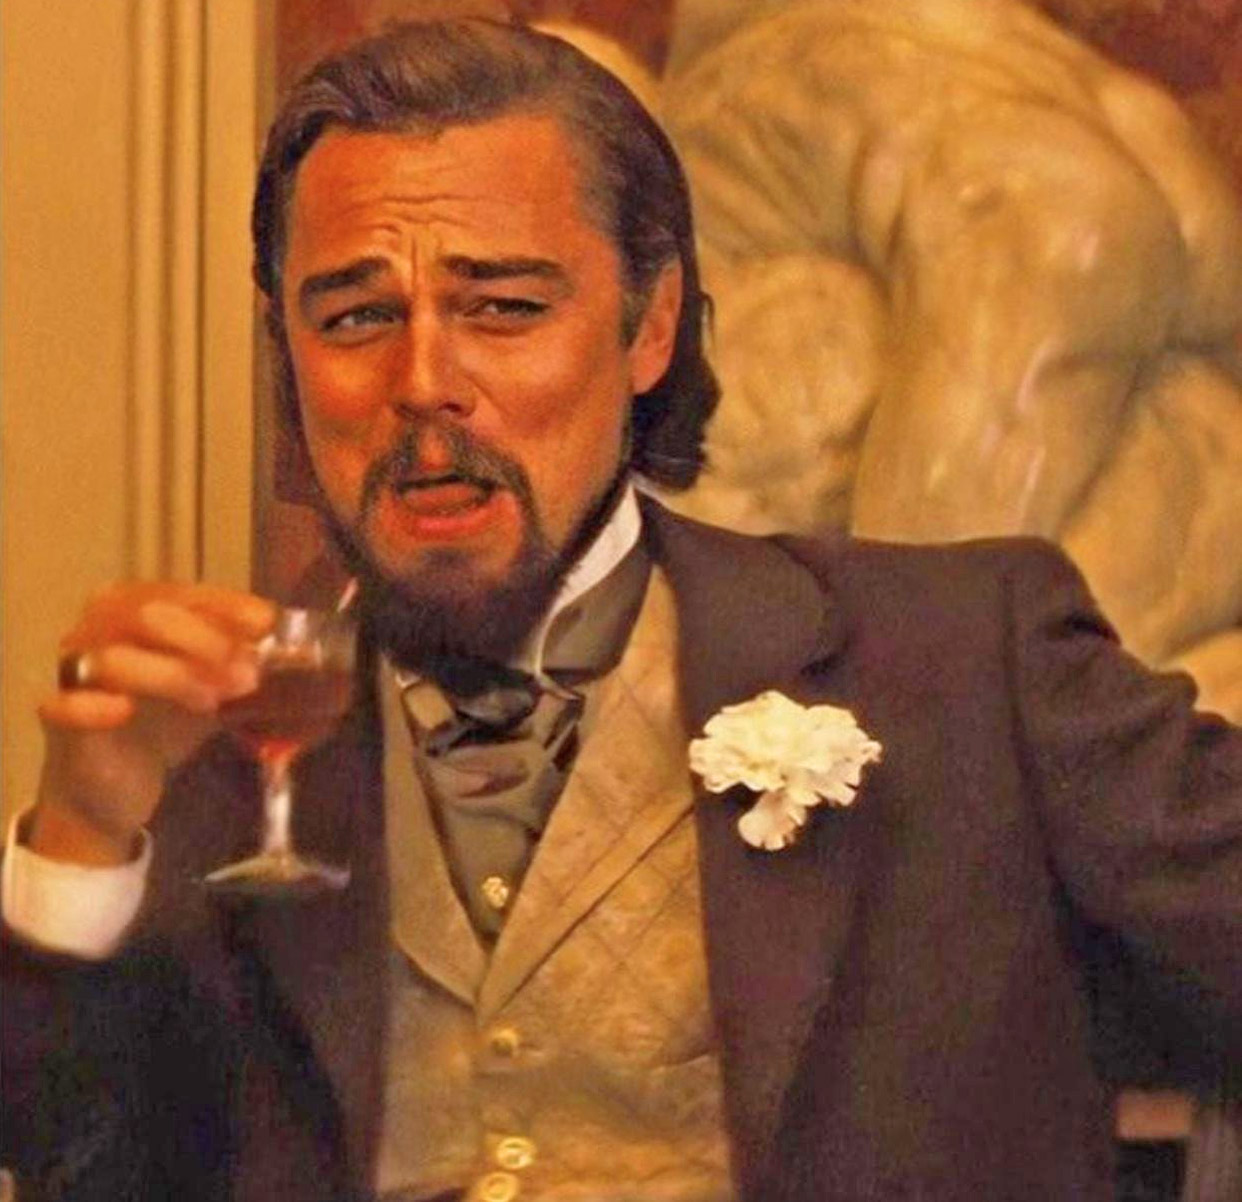 original Leo smug face meme - original laughing Leonardo DiCaprio meme image